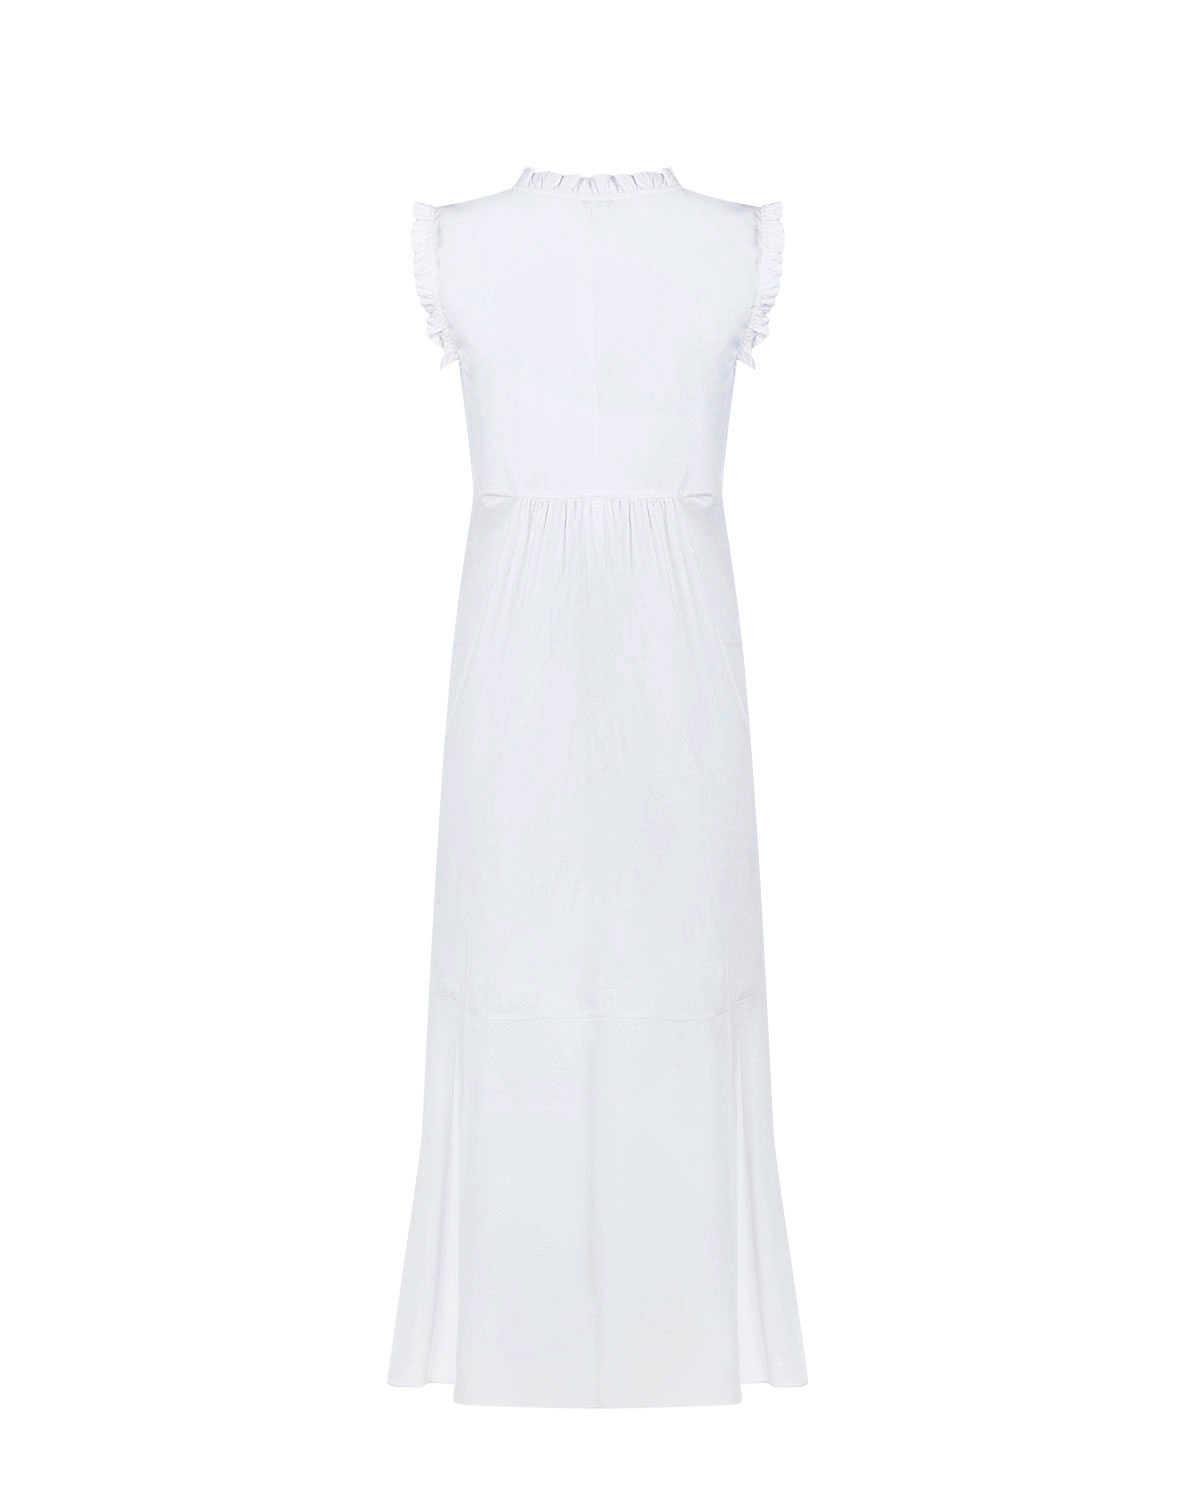 Белое платье с отделкой рюшами Attesa - фото 5